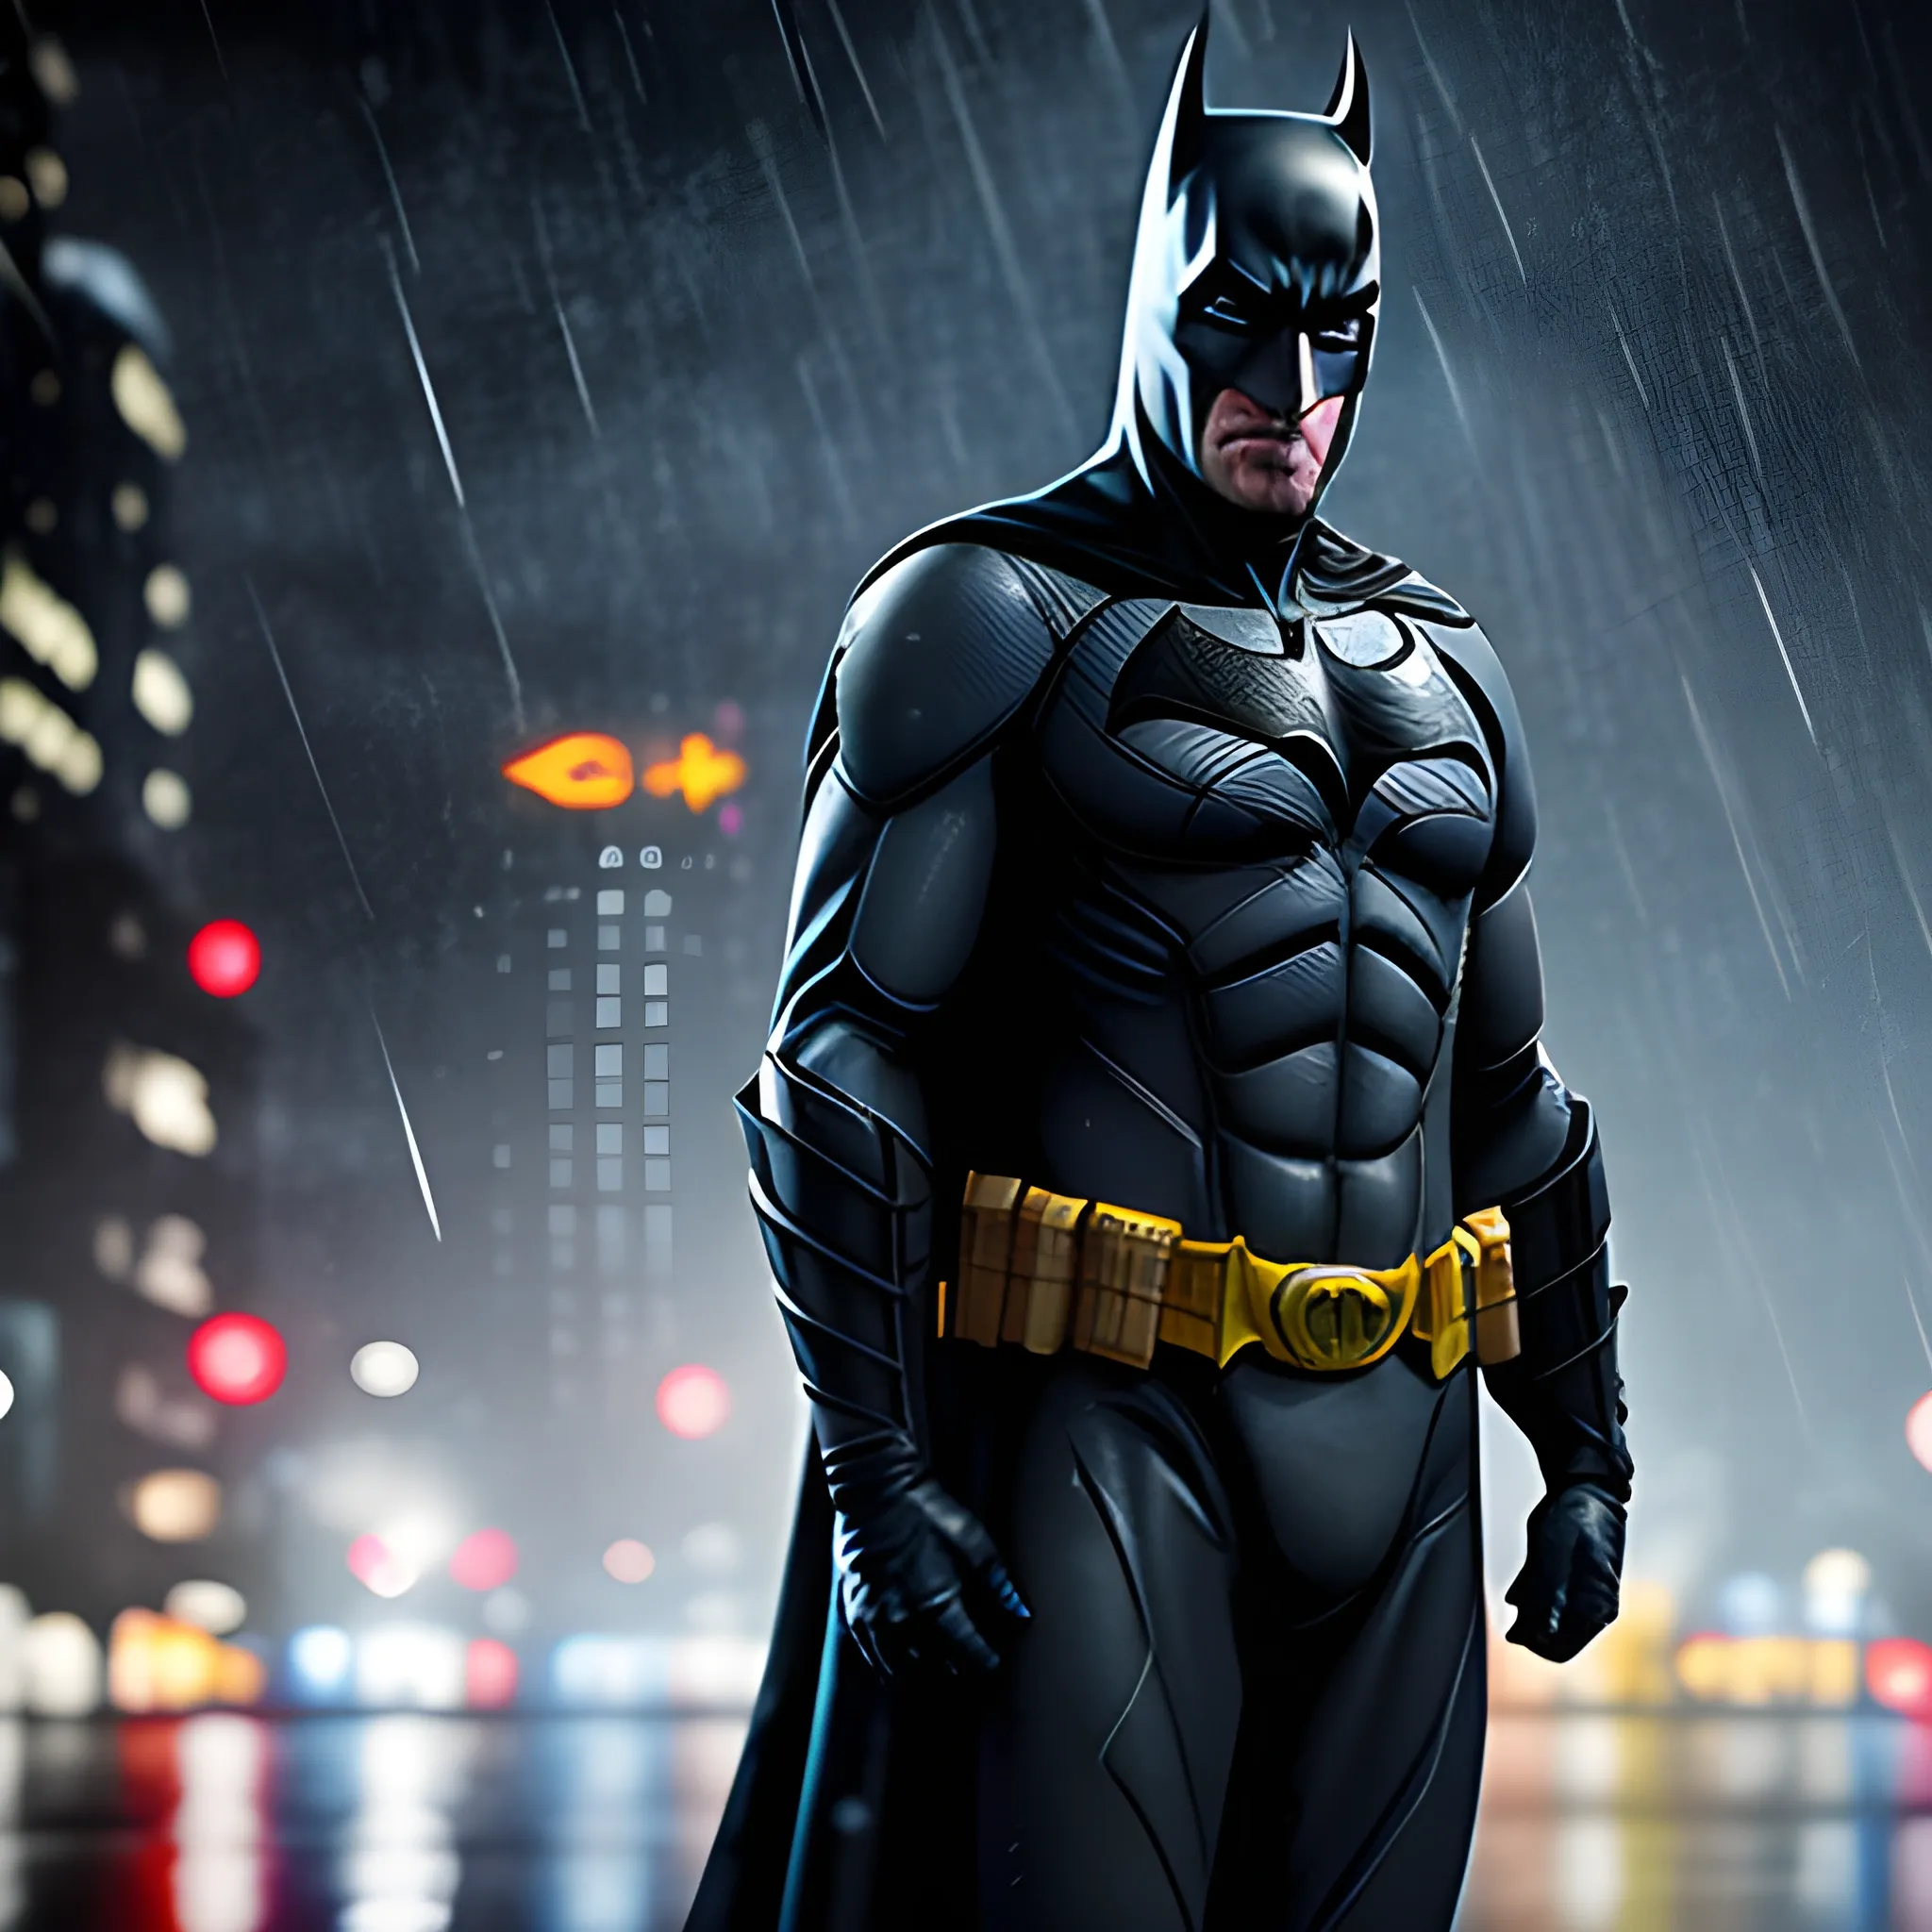 The Batman Catwoman 2022 Movie Art PC Desktop 8K 4K Wallpaper free Download